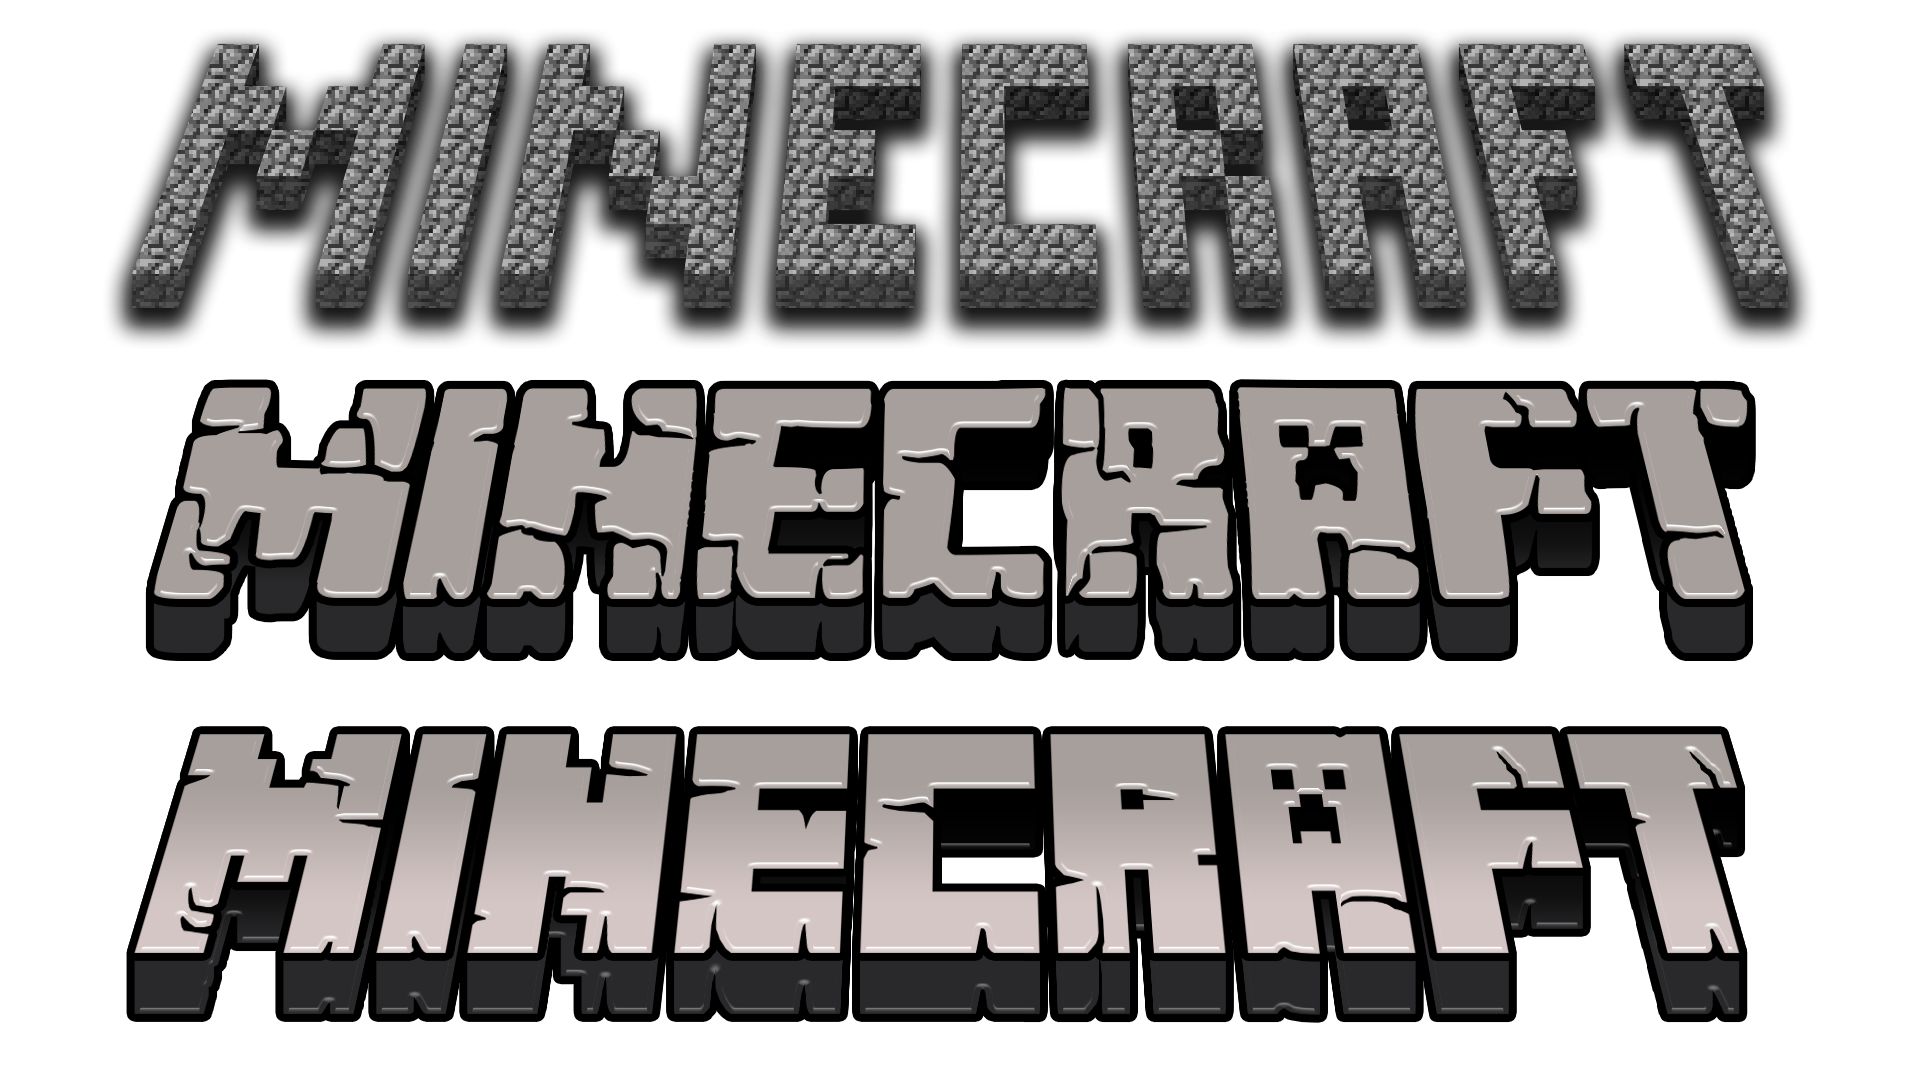 Майне слово. Майнкрафт. Minecraft логотип. Майнкрафт надпись. Логотип игры майнкрафт.